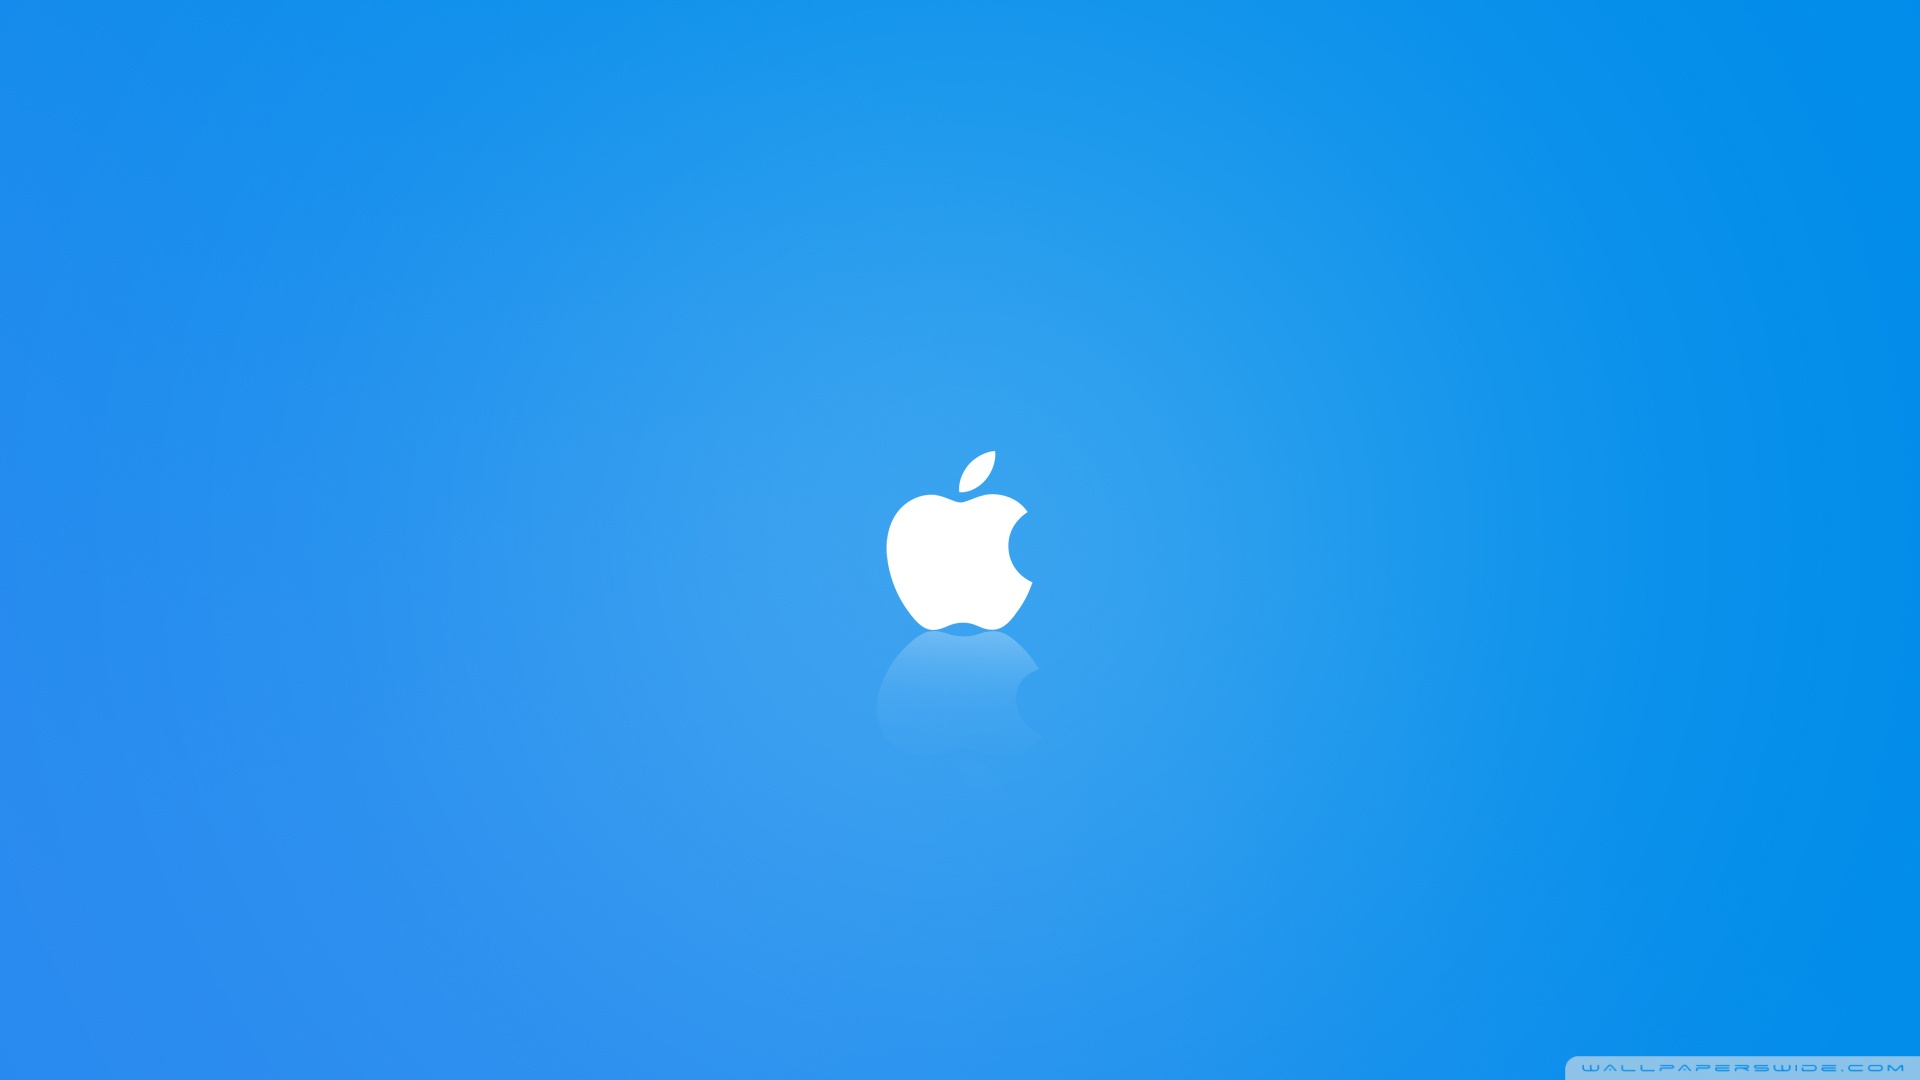 Apple MAC OS X Blue Wallpaper Full HD [1920x1080] - Free wallpaper ...